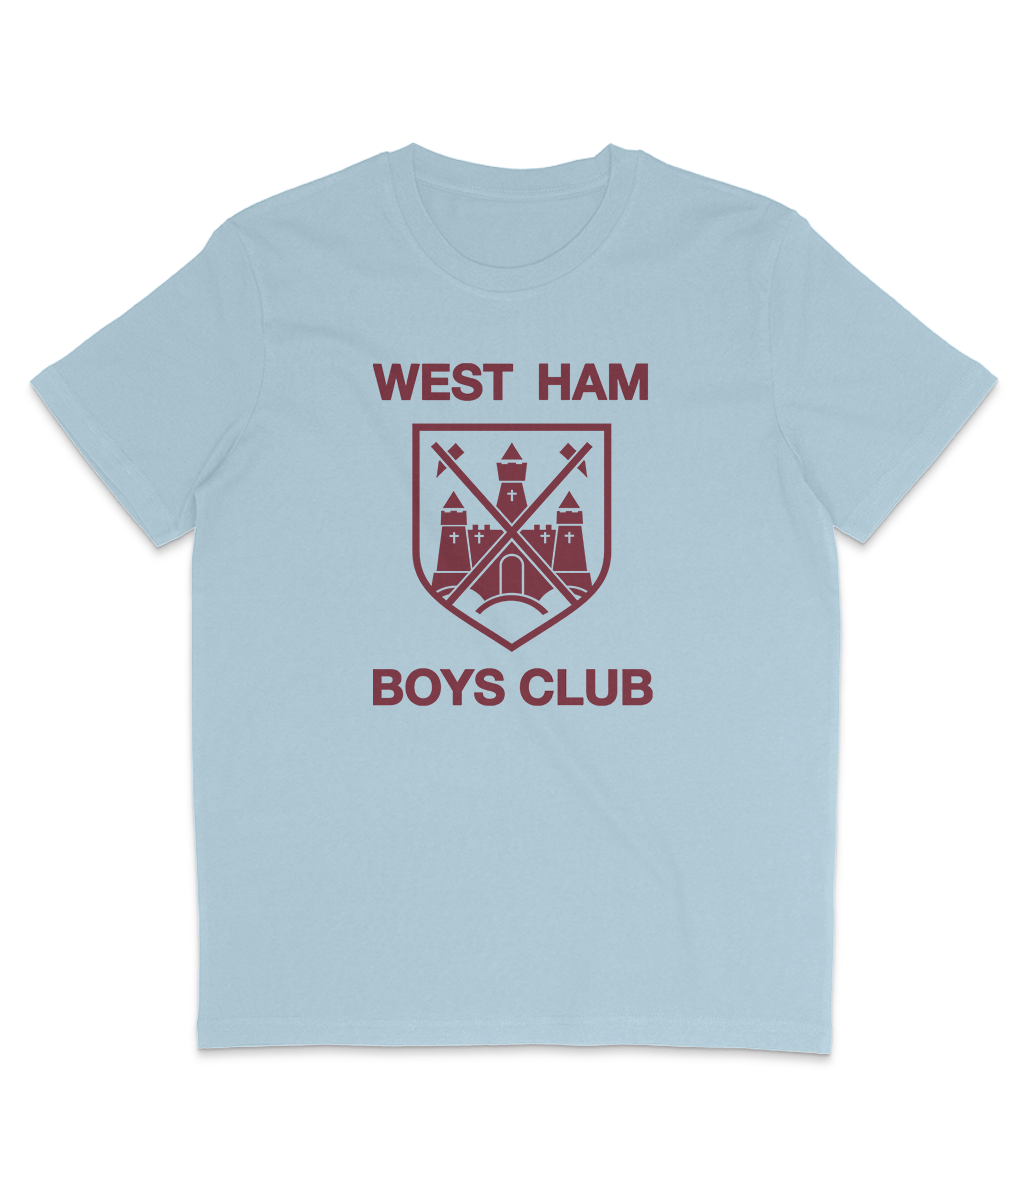 West Ham Boys Club